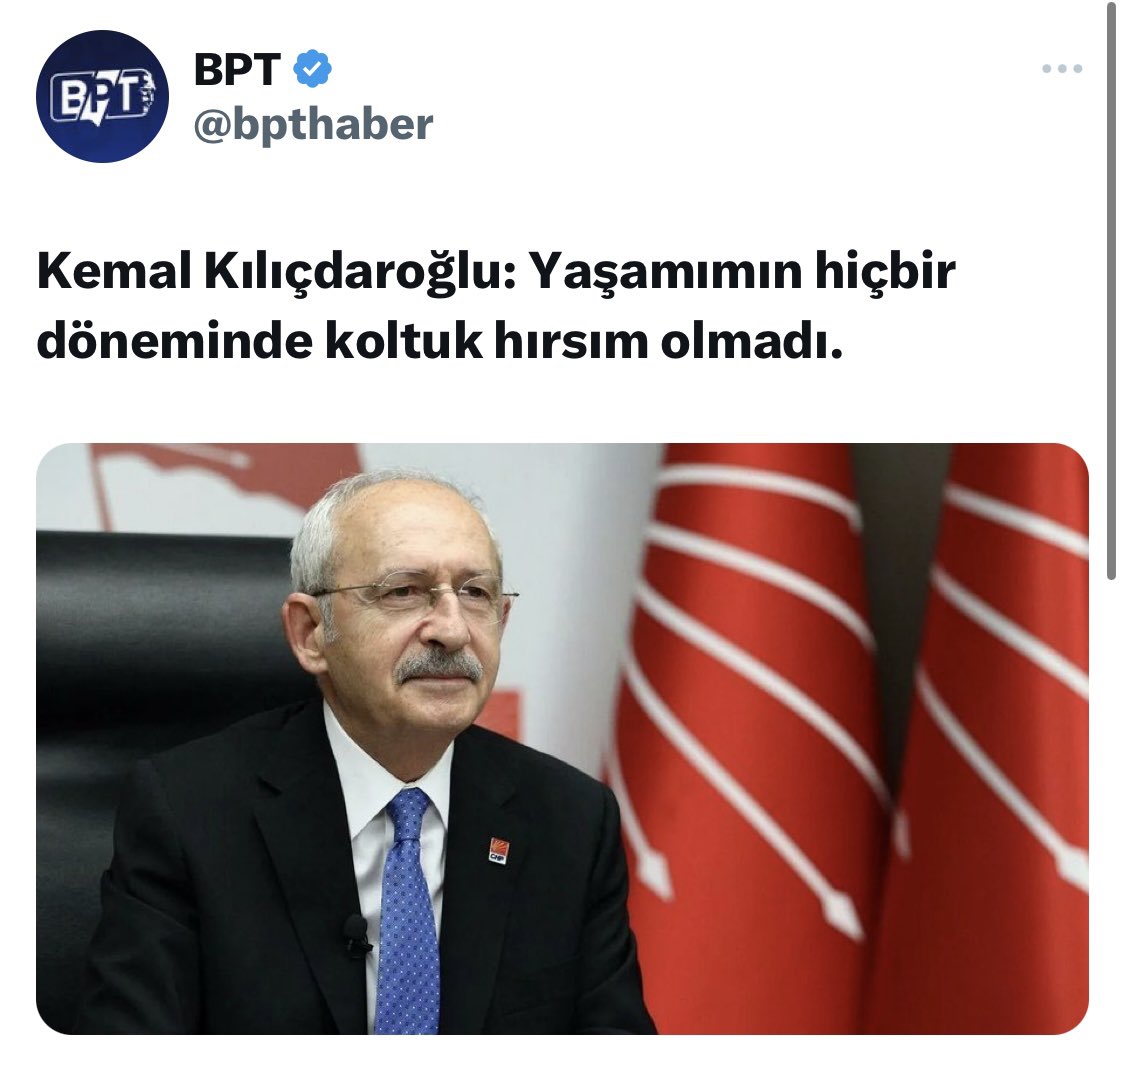 Kemal Kılıçdaroğlu: Hiçbir dönem koltuk hırsım olmadı demiş!! 🤠

Ne düşünüyorsunuz??